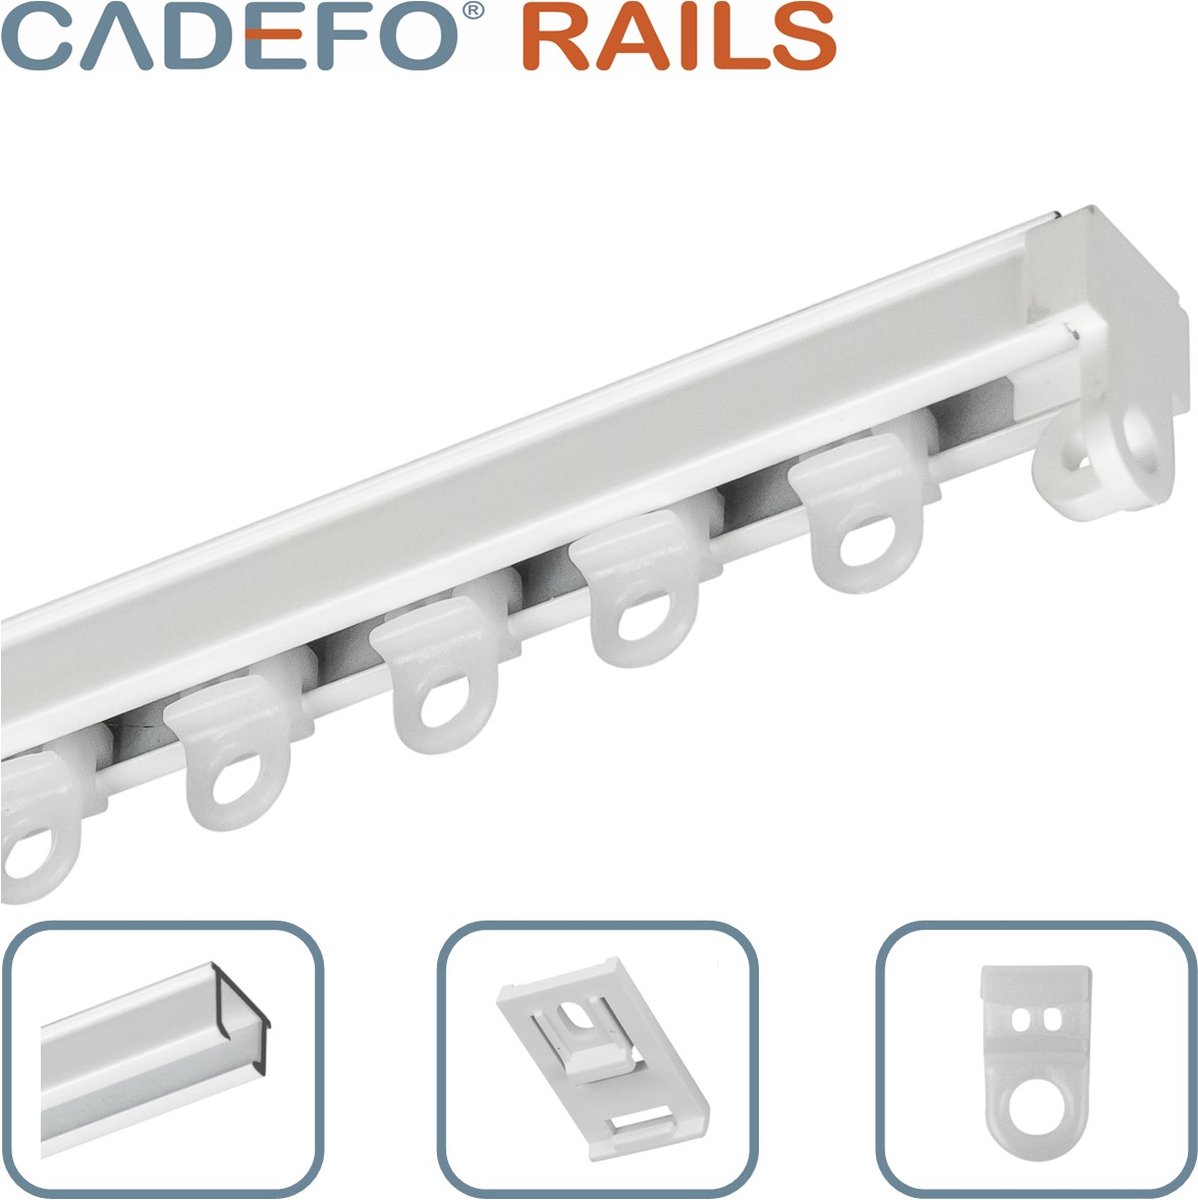 CADEFO RAILS (301 - 350 cm) Gordijnrails - Compleet op maat! - UIT 1 STUK - Leverbaar tot 6 meter - Plafondbevestiging - Lengte 343 cm